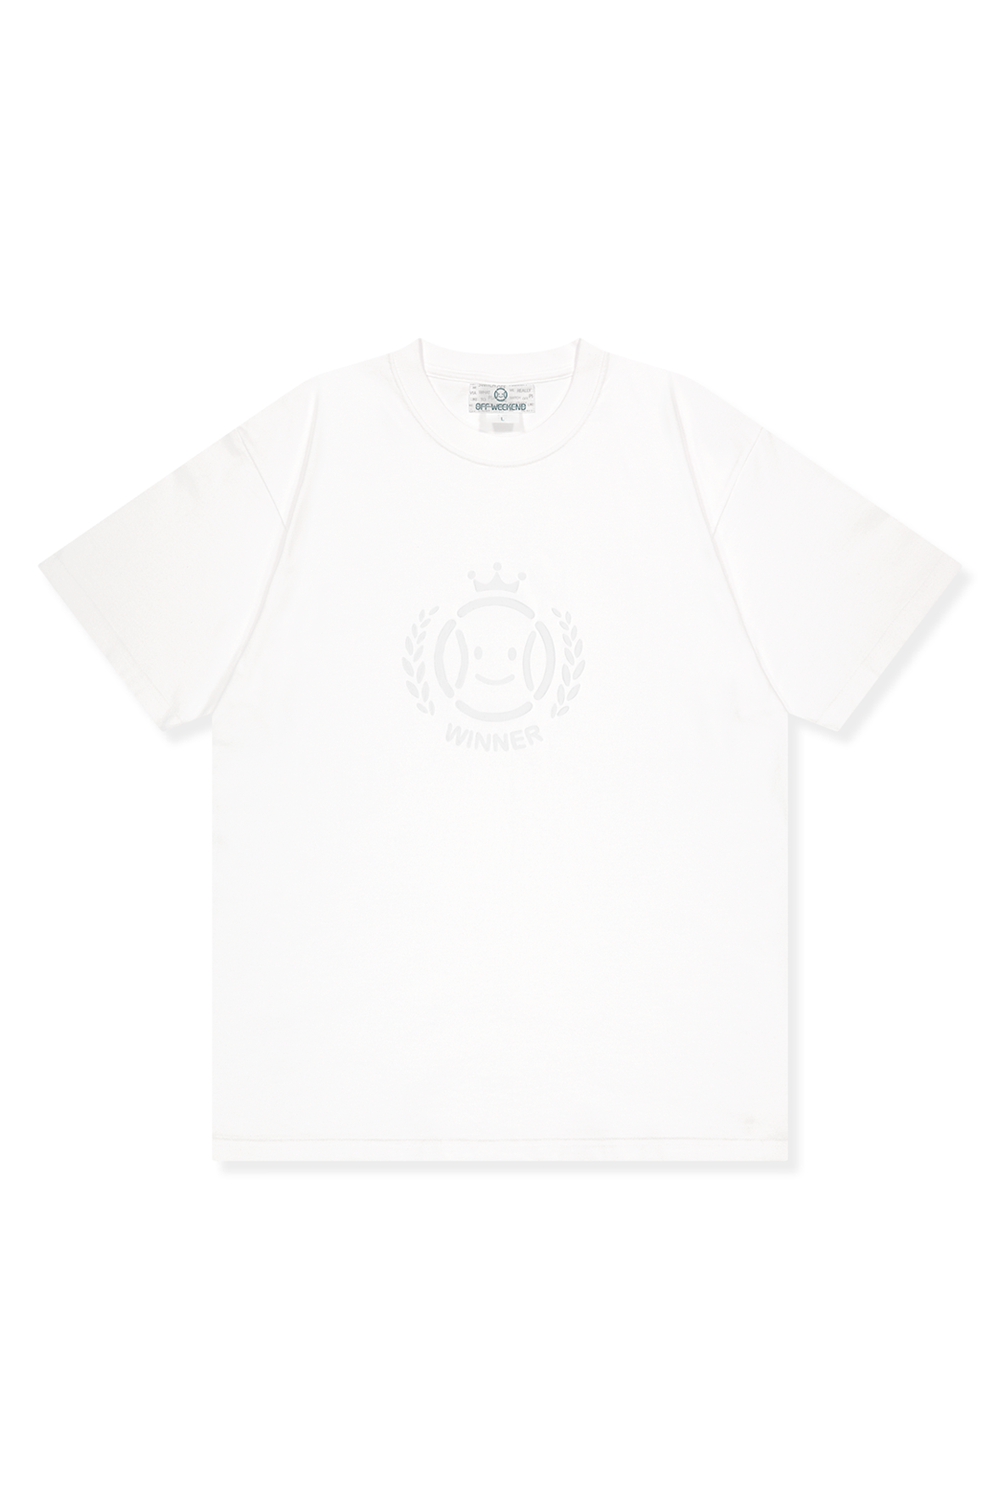 Tennis Winner Ghost T-shirts (WHITE) RICHEZ